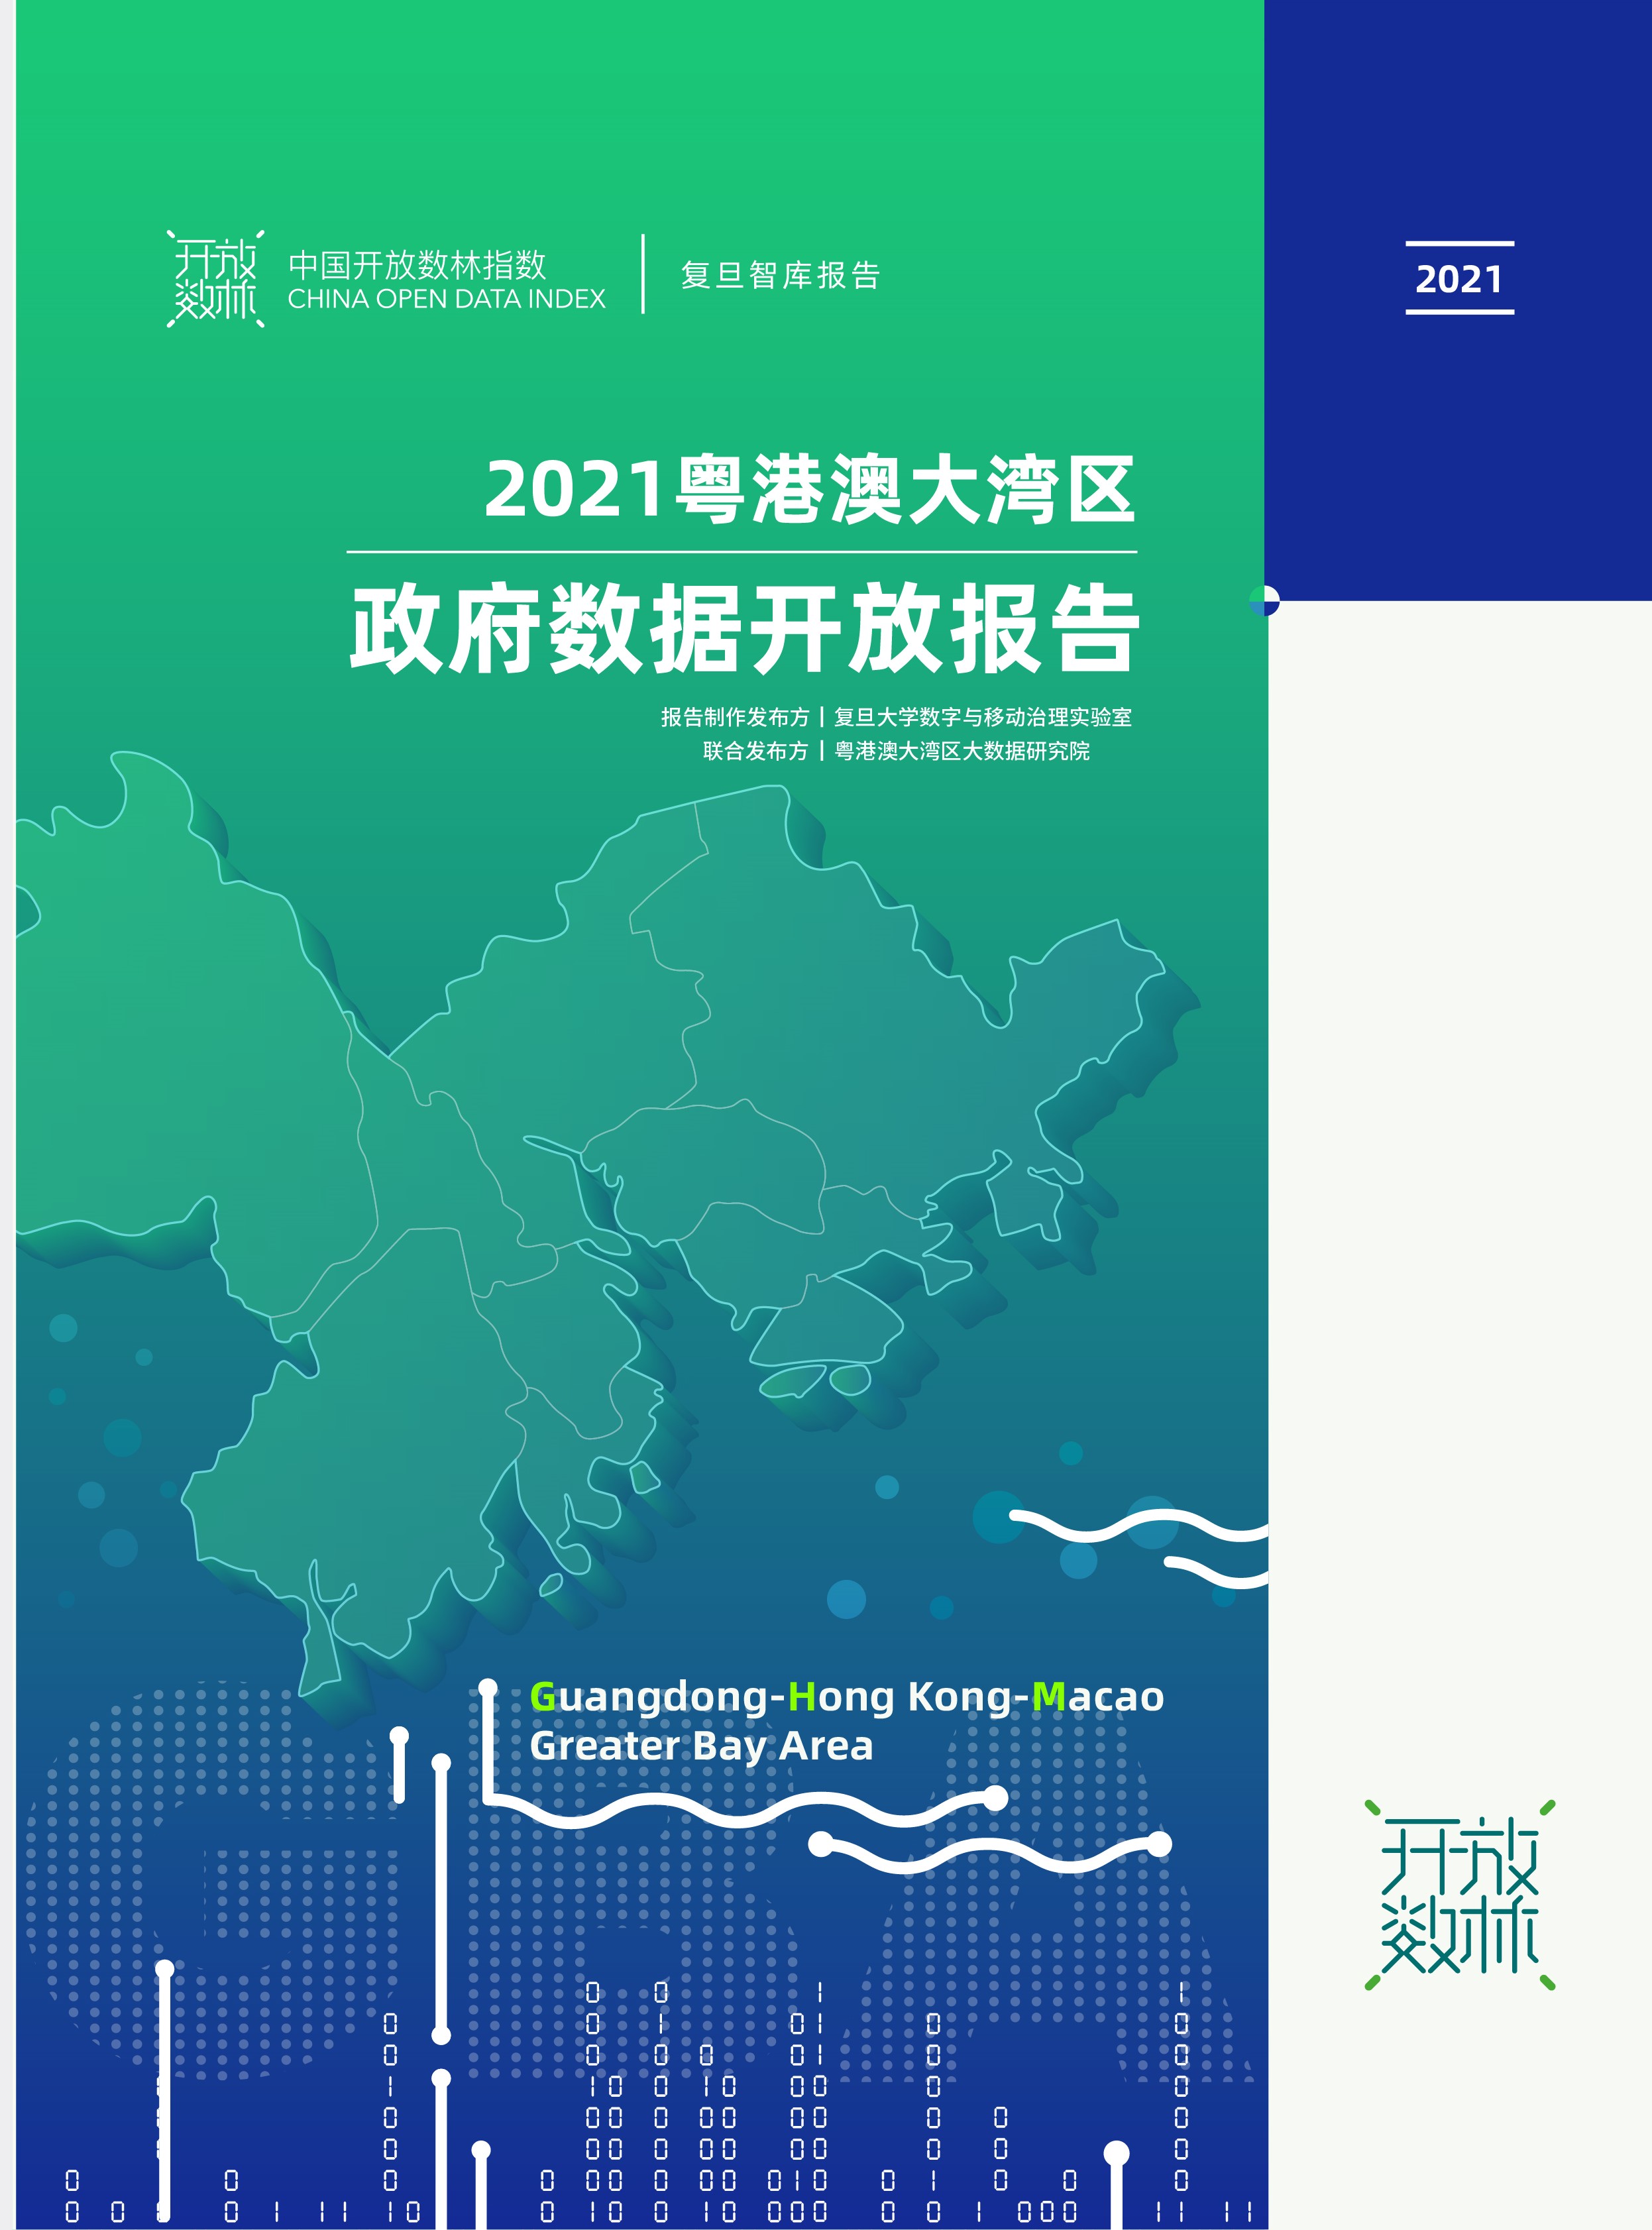 《2021粤港澳大湾区政府数据开放报告》首次发布